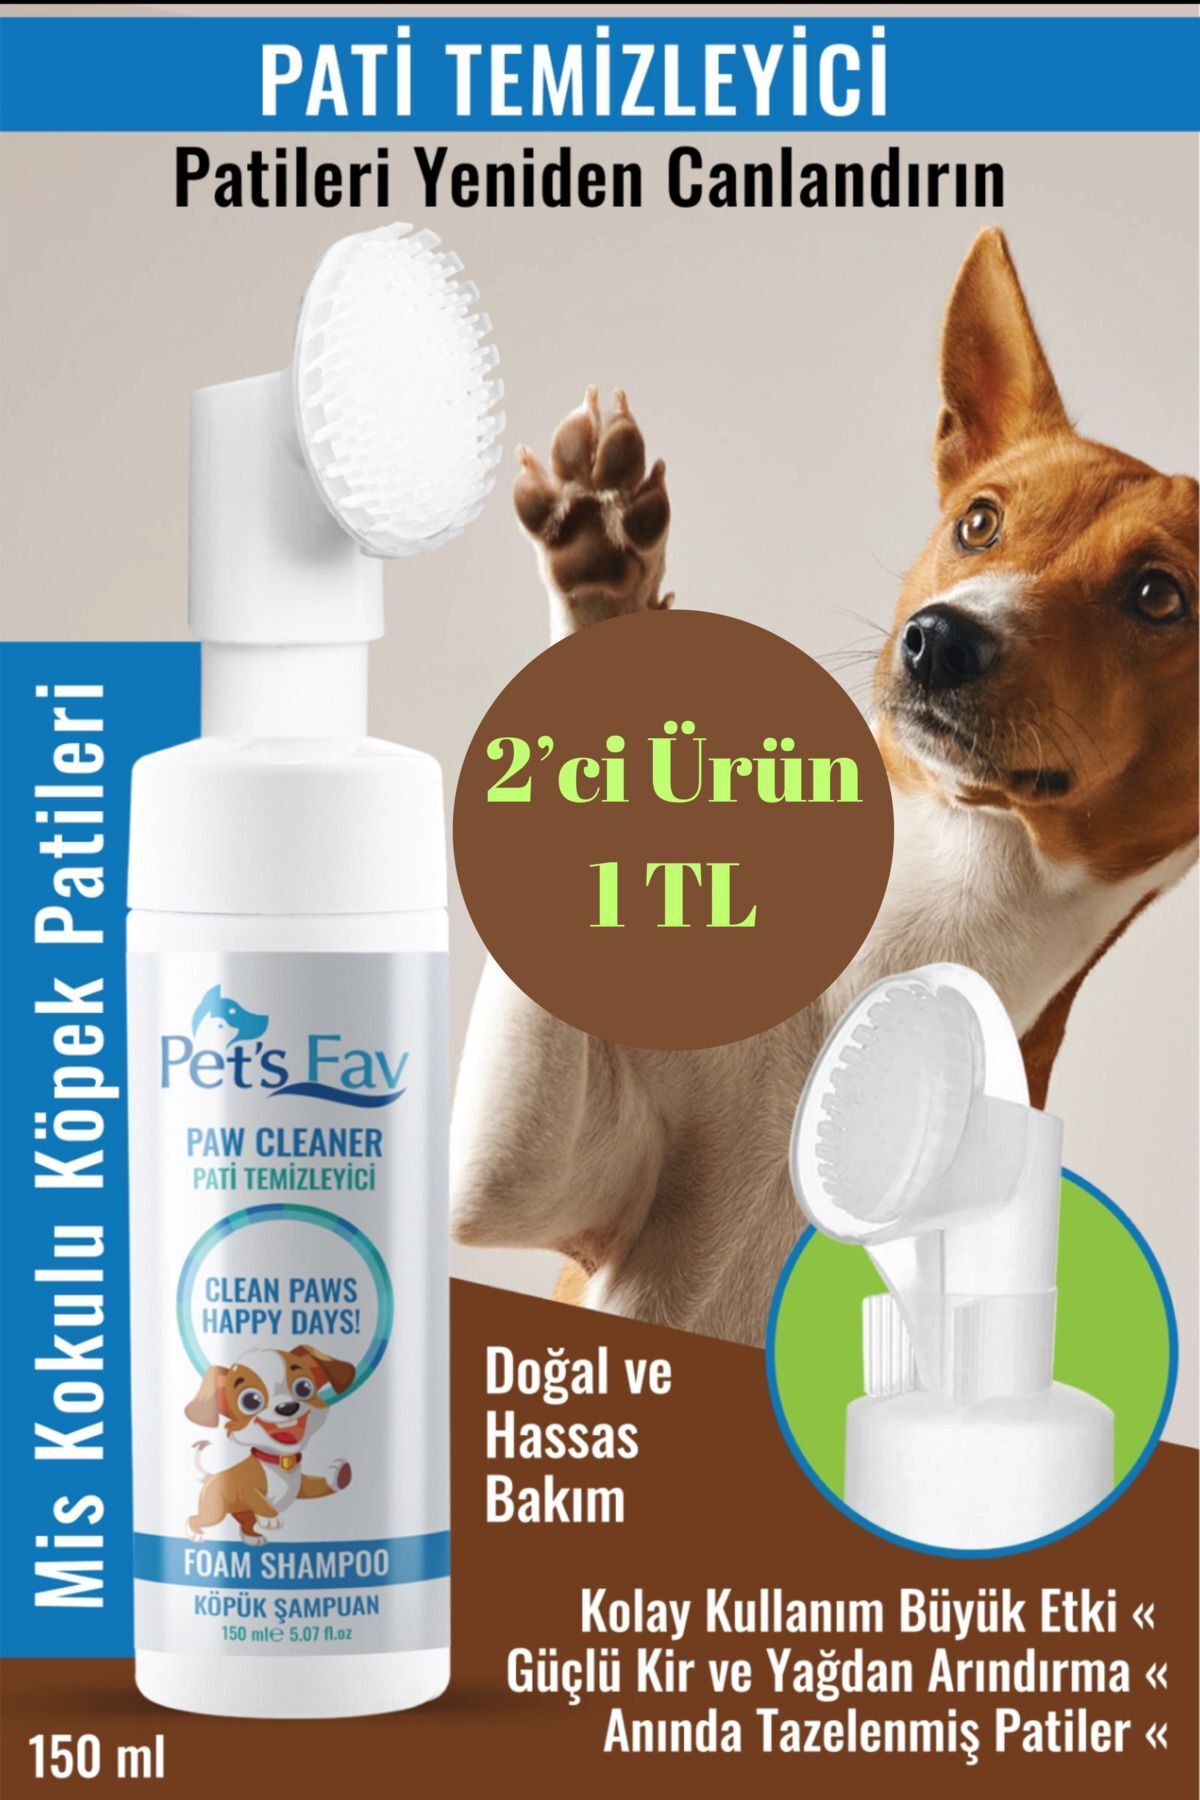 Pets Fav Köpek Hızlı ve Pratik Pati Temizleyici Organik ve Doğal Kuru Köpük Şampuanı Özel Fırçalı Başlık